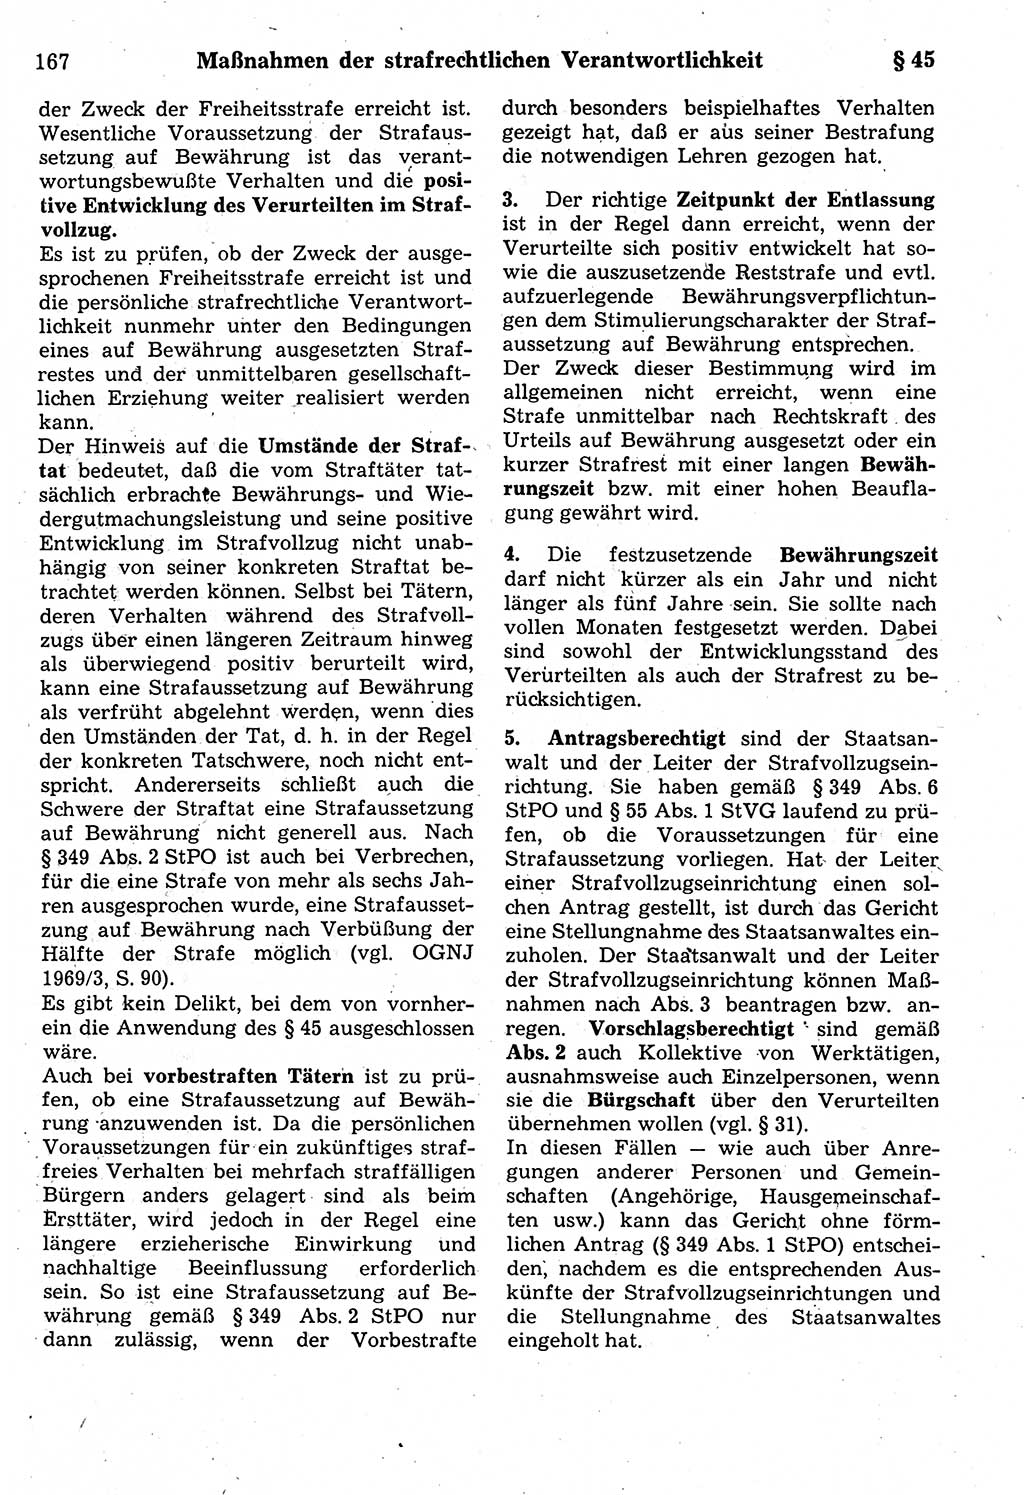 Strafrecht der Deutschen Demokratischen Republik (DDR), Kommentar zum Strafgesetzbuch (StGB) 1987, Seite 167 (Strafr. DDR Komm. StGB 1987, S. 167)